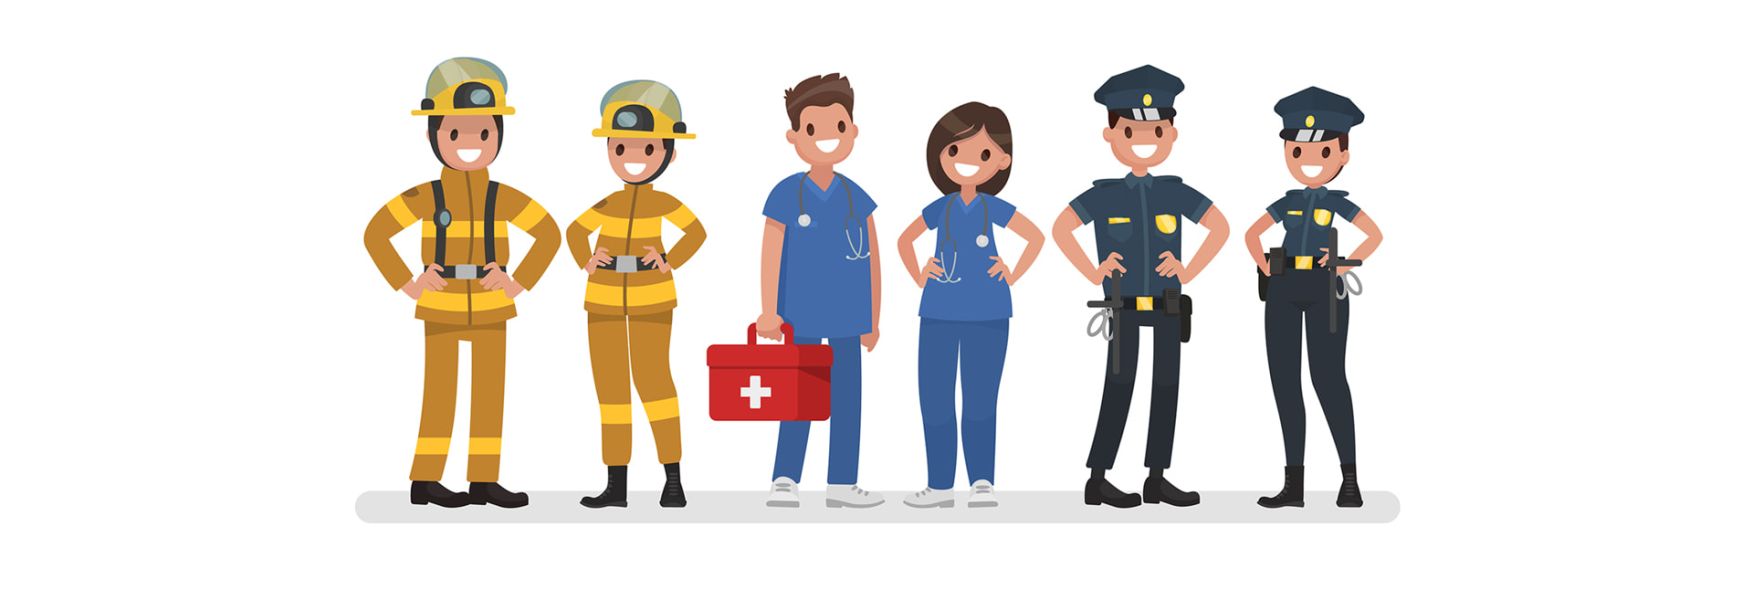 Comicfiguren Einsatz und Rettungskräfte von der Feuerwehr, Krankenhauspersonal und Polizei